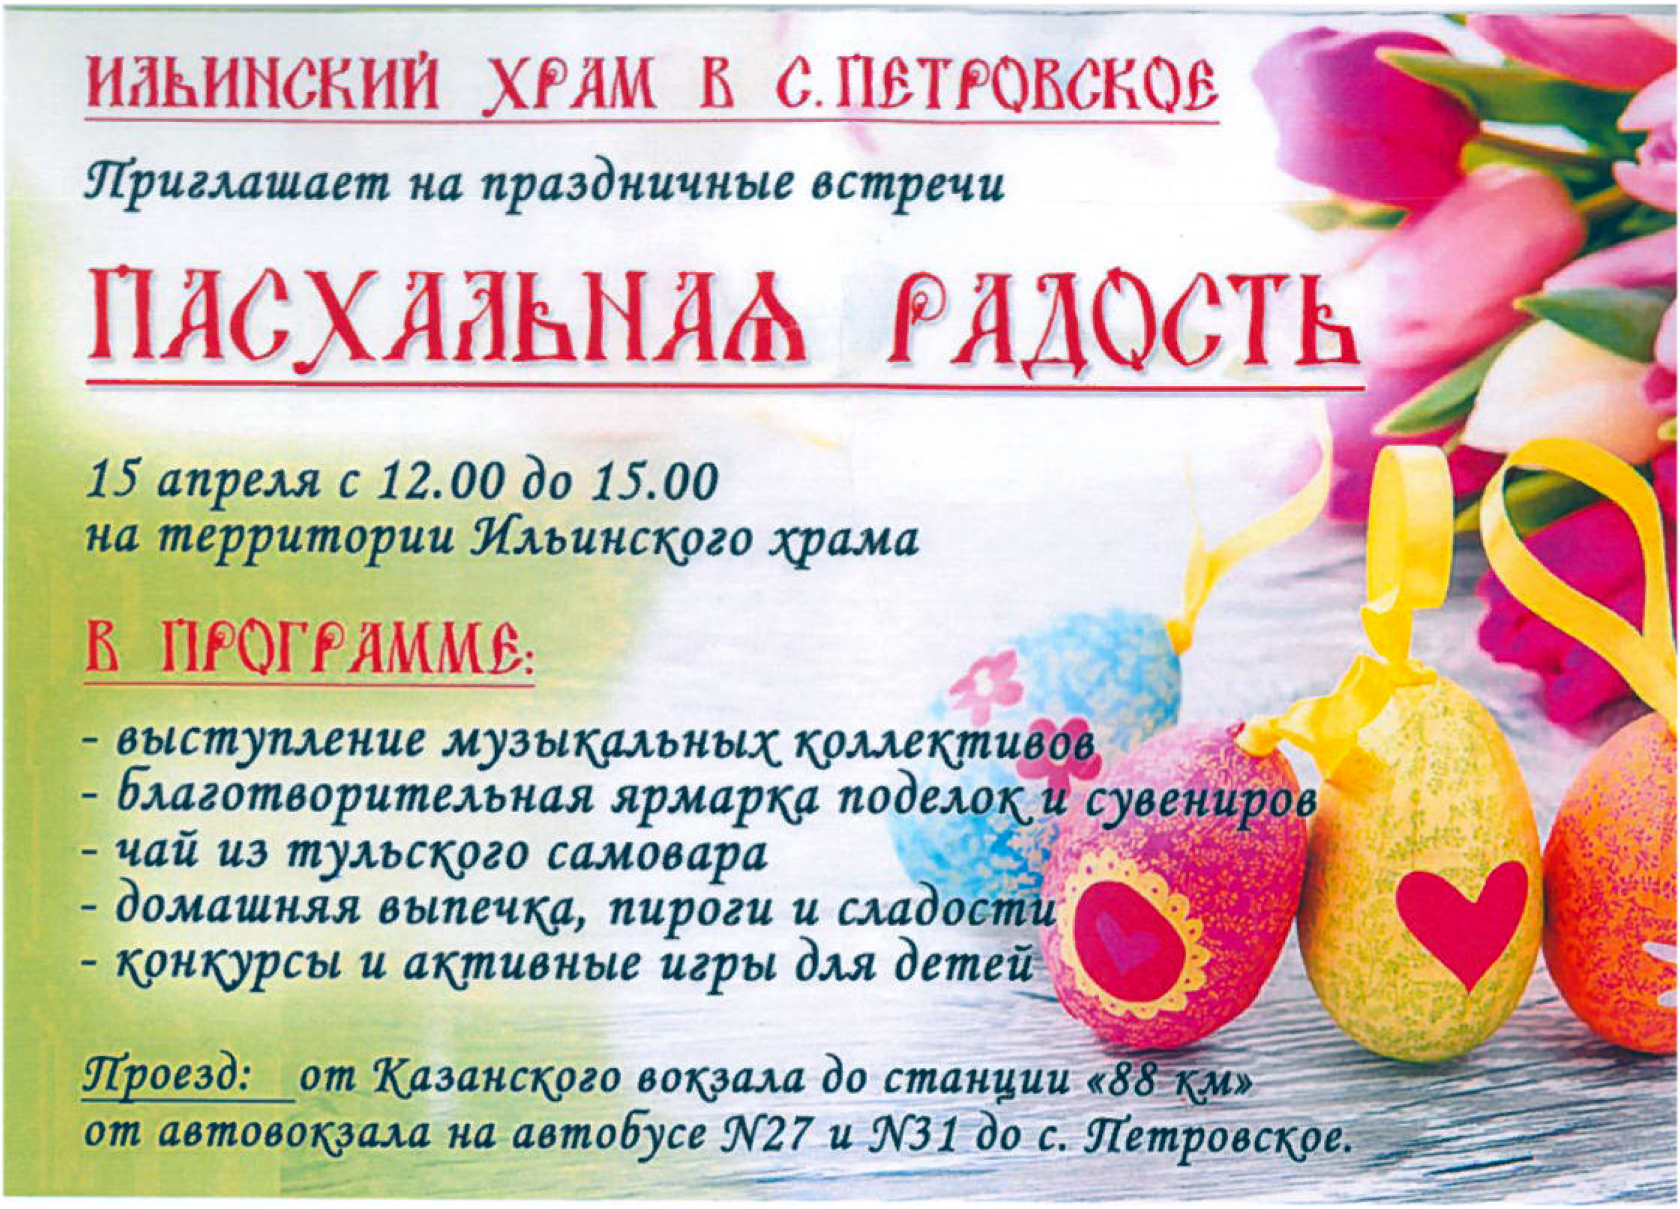 12 апреля Ильинский храм